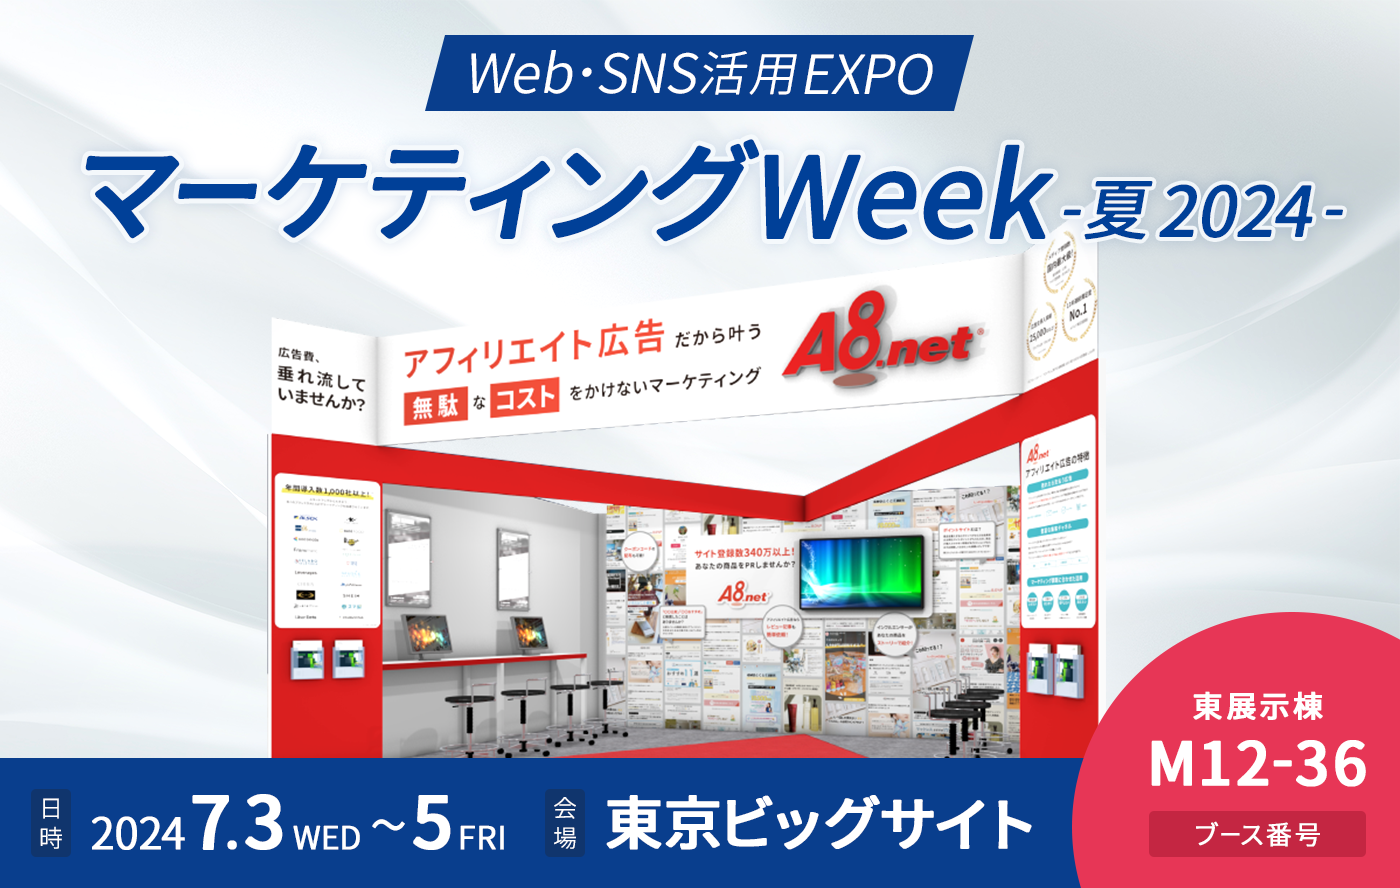 【終了しました】A8.net、「マーケティング Week -夏 2024-」に出展します  ＜2024年7月3日（水）～5日（金）東京ビッグサイト＞